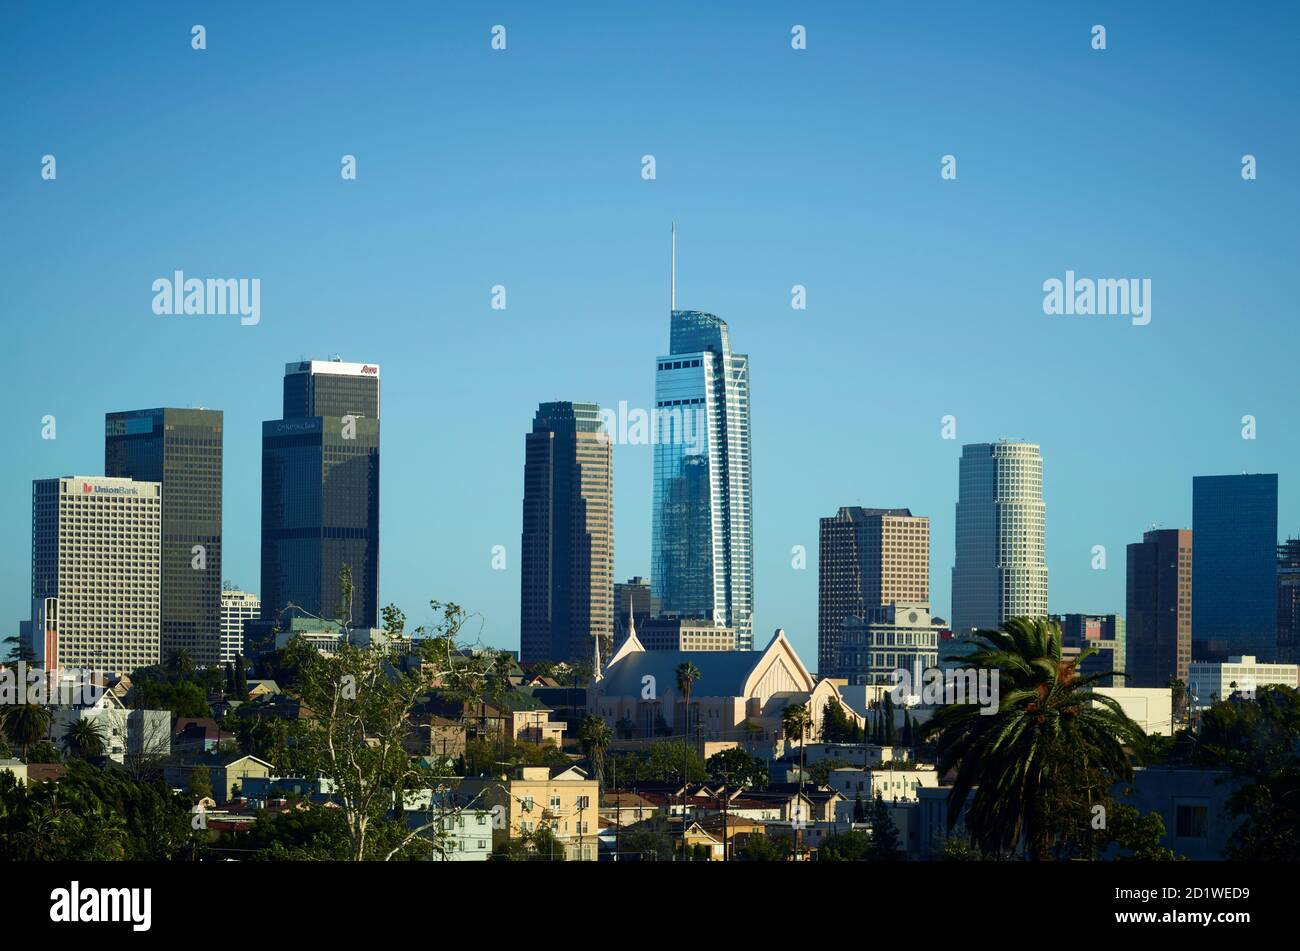 Stadtbild von Los Angeles, Kalifornien, USA mit dem Wilshire Grand Center, einem 1,100 Meter großen, 73-stöckigen Glashochhaus im Zentrum. Stockfoto